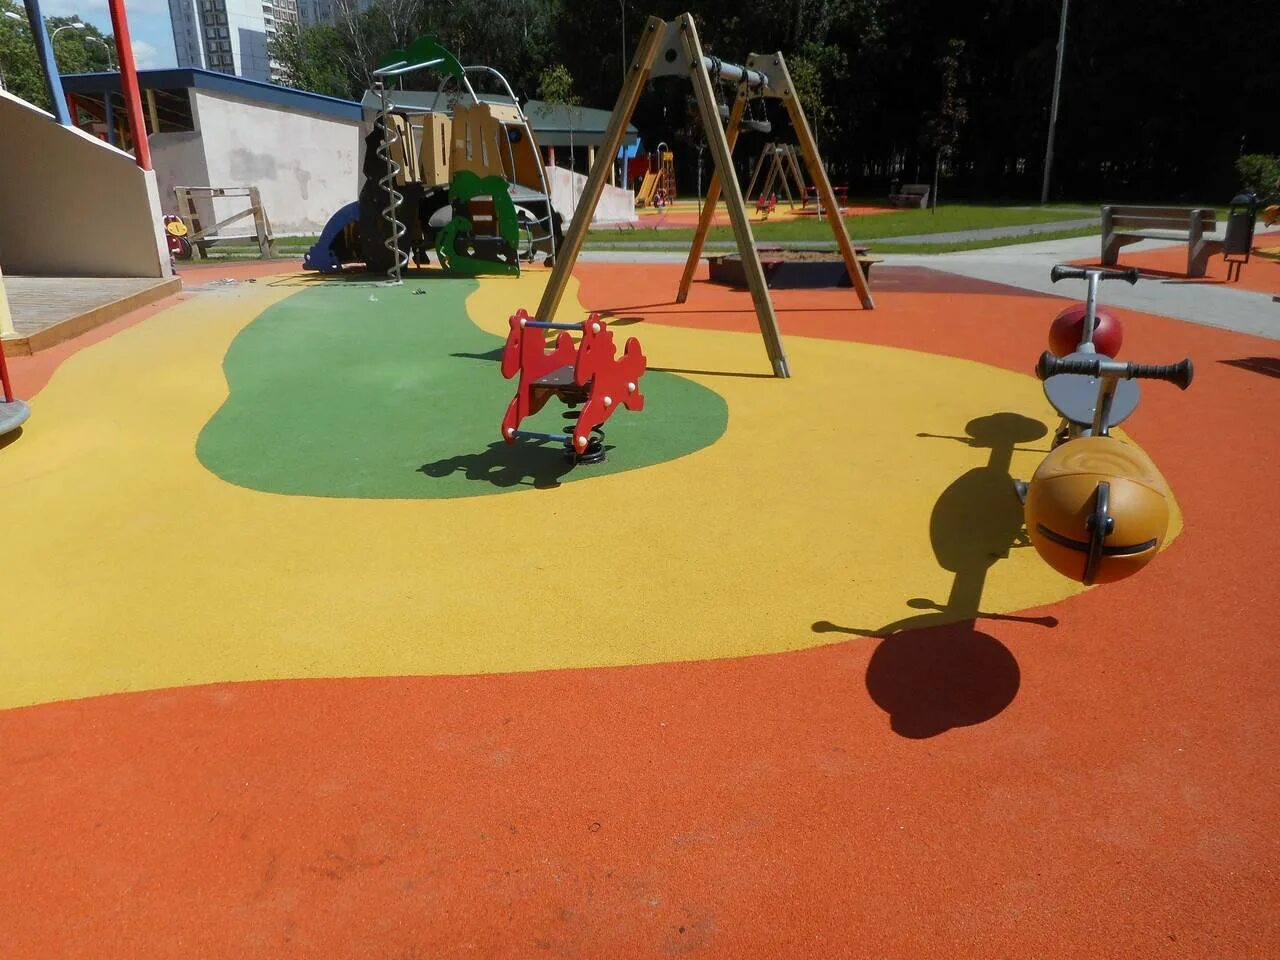 Резиновое покрытие на детской площадке. Детские площадки с резиновым покрытием. Покрытие для детских площадок из резиновой крошки. Каучуковое покрытие для детских площадок.